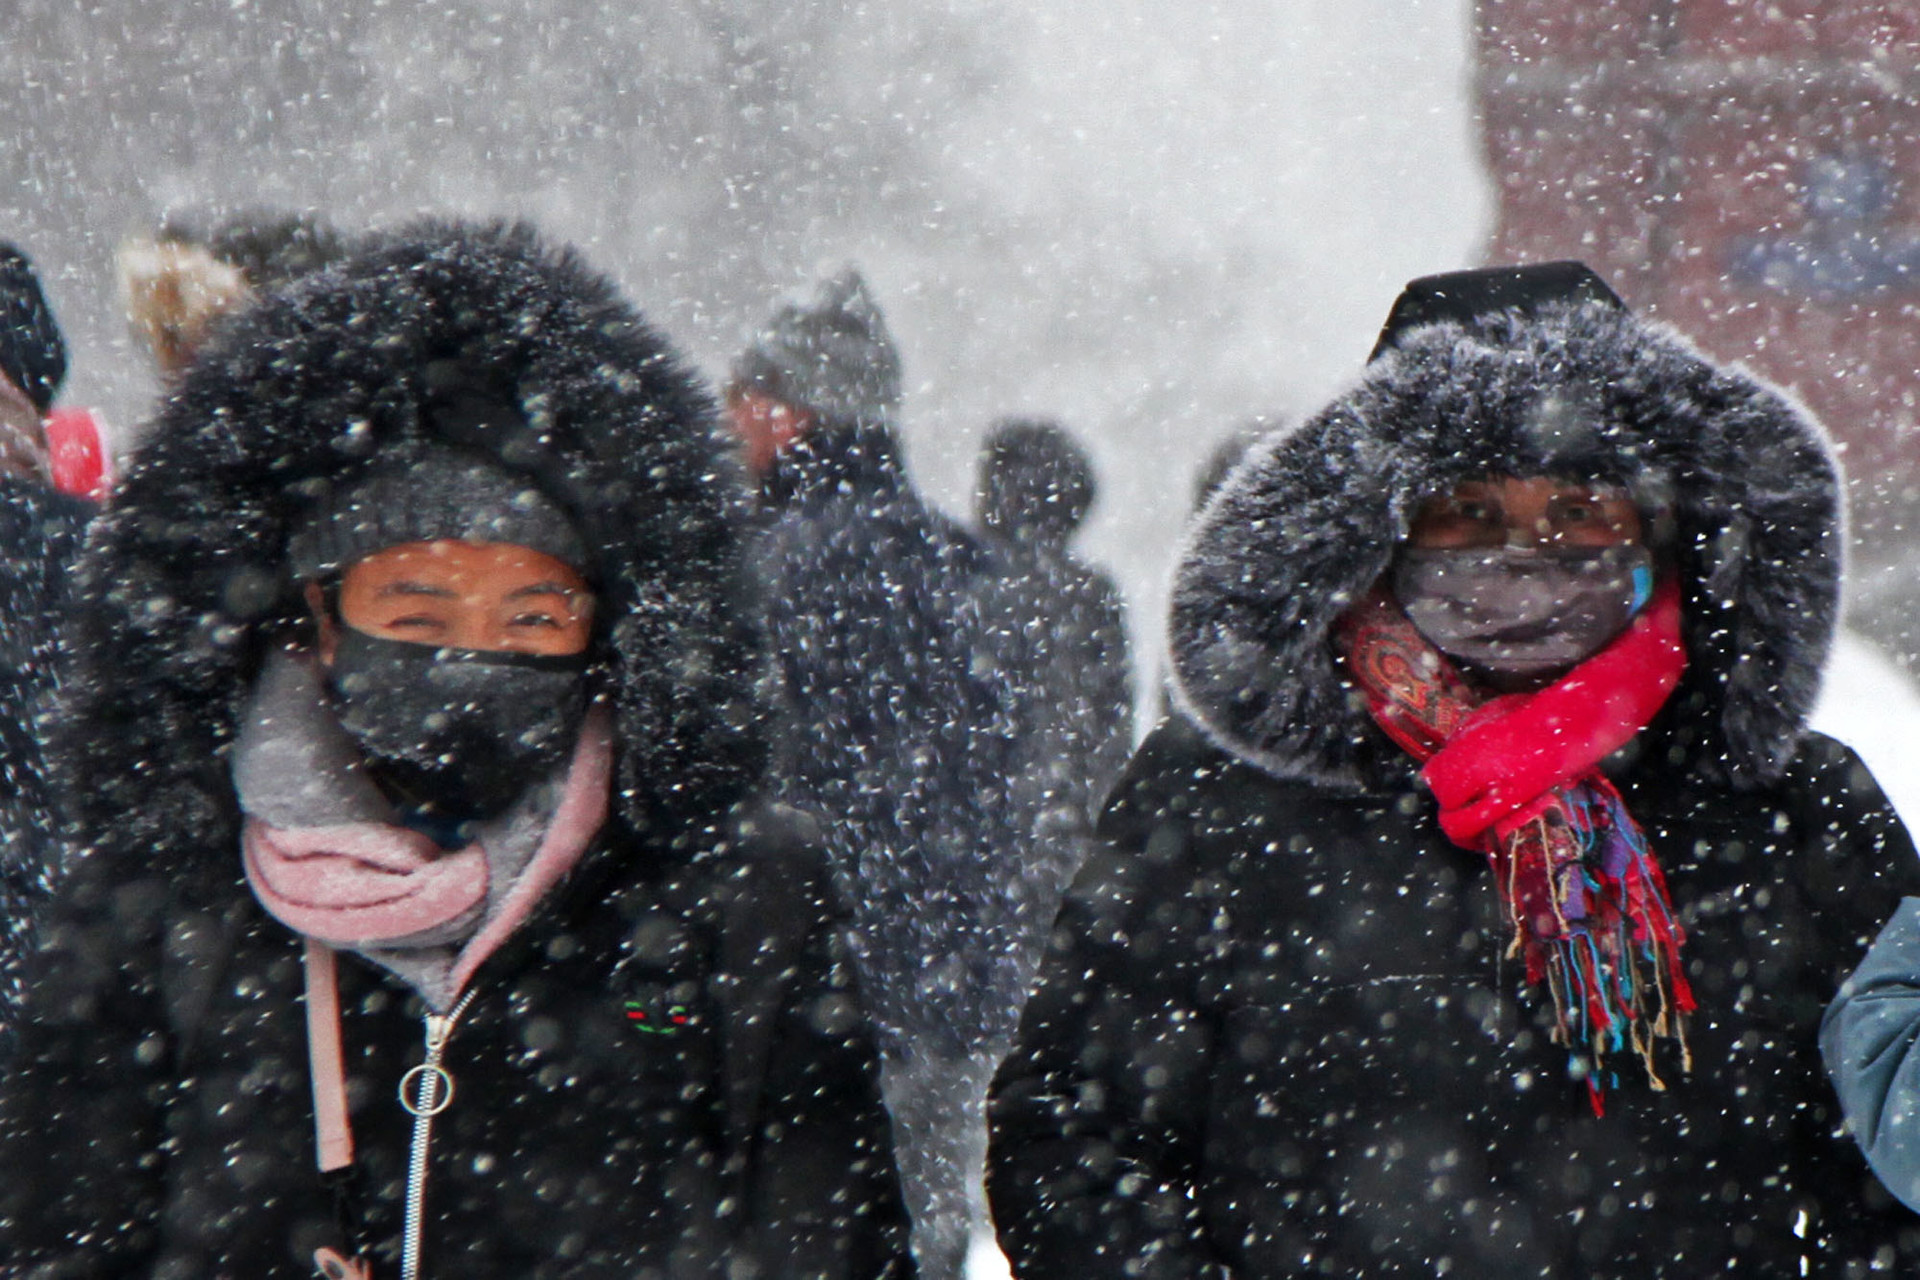 Pengunjung menutupi wajah saat badai salju di Lapangan Merah, Moskow, Rusia, Sabtu (26/1).    